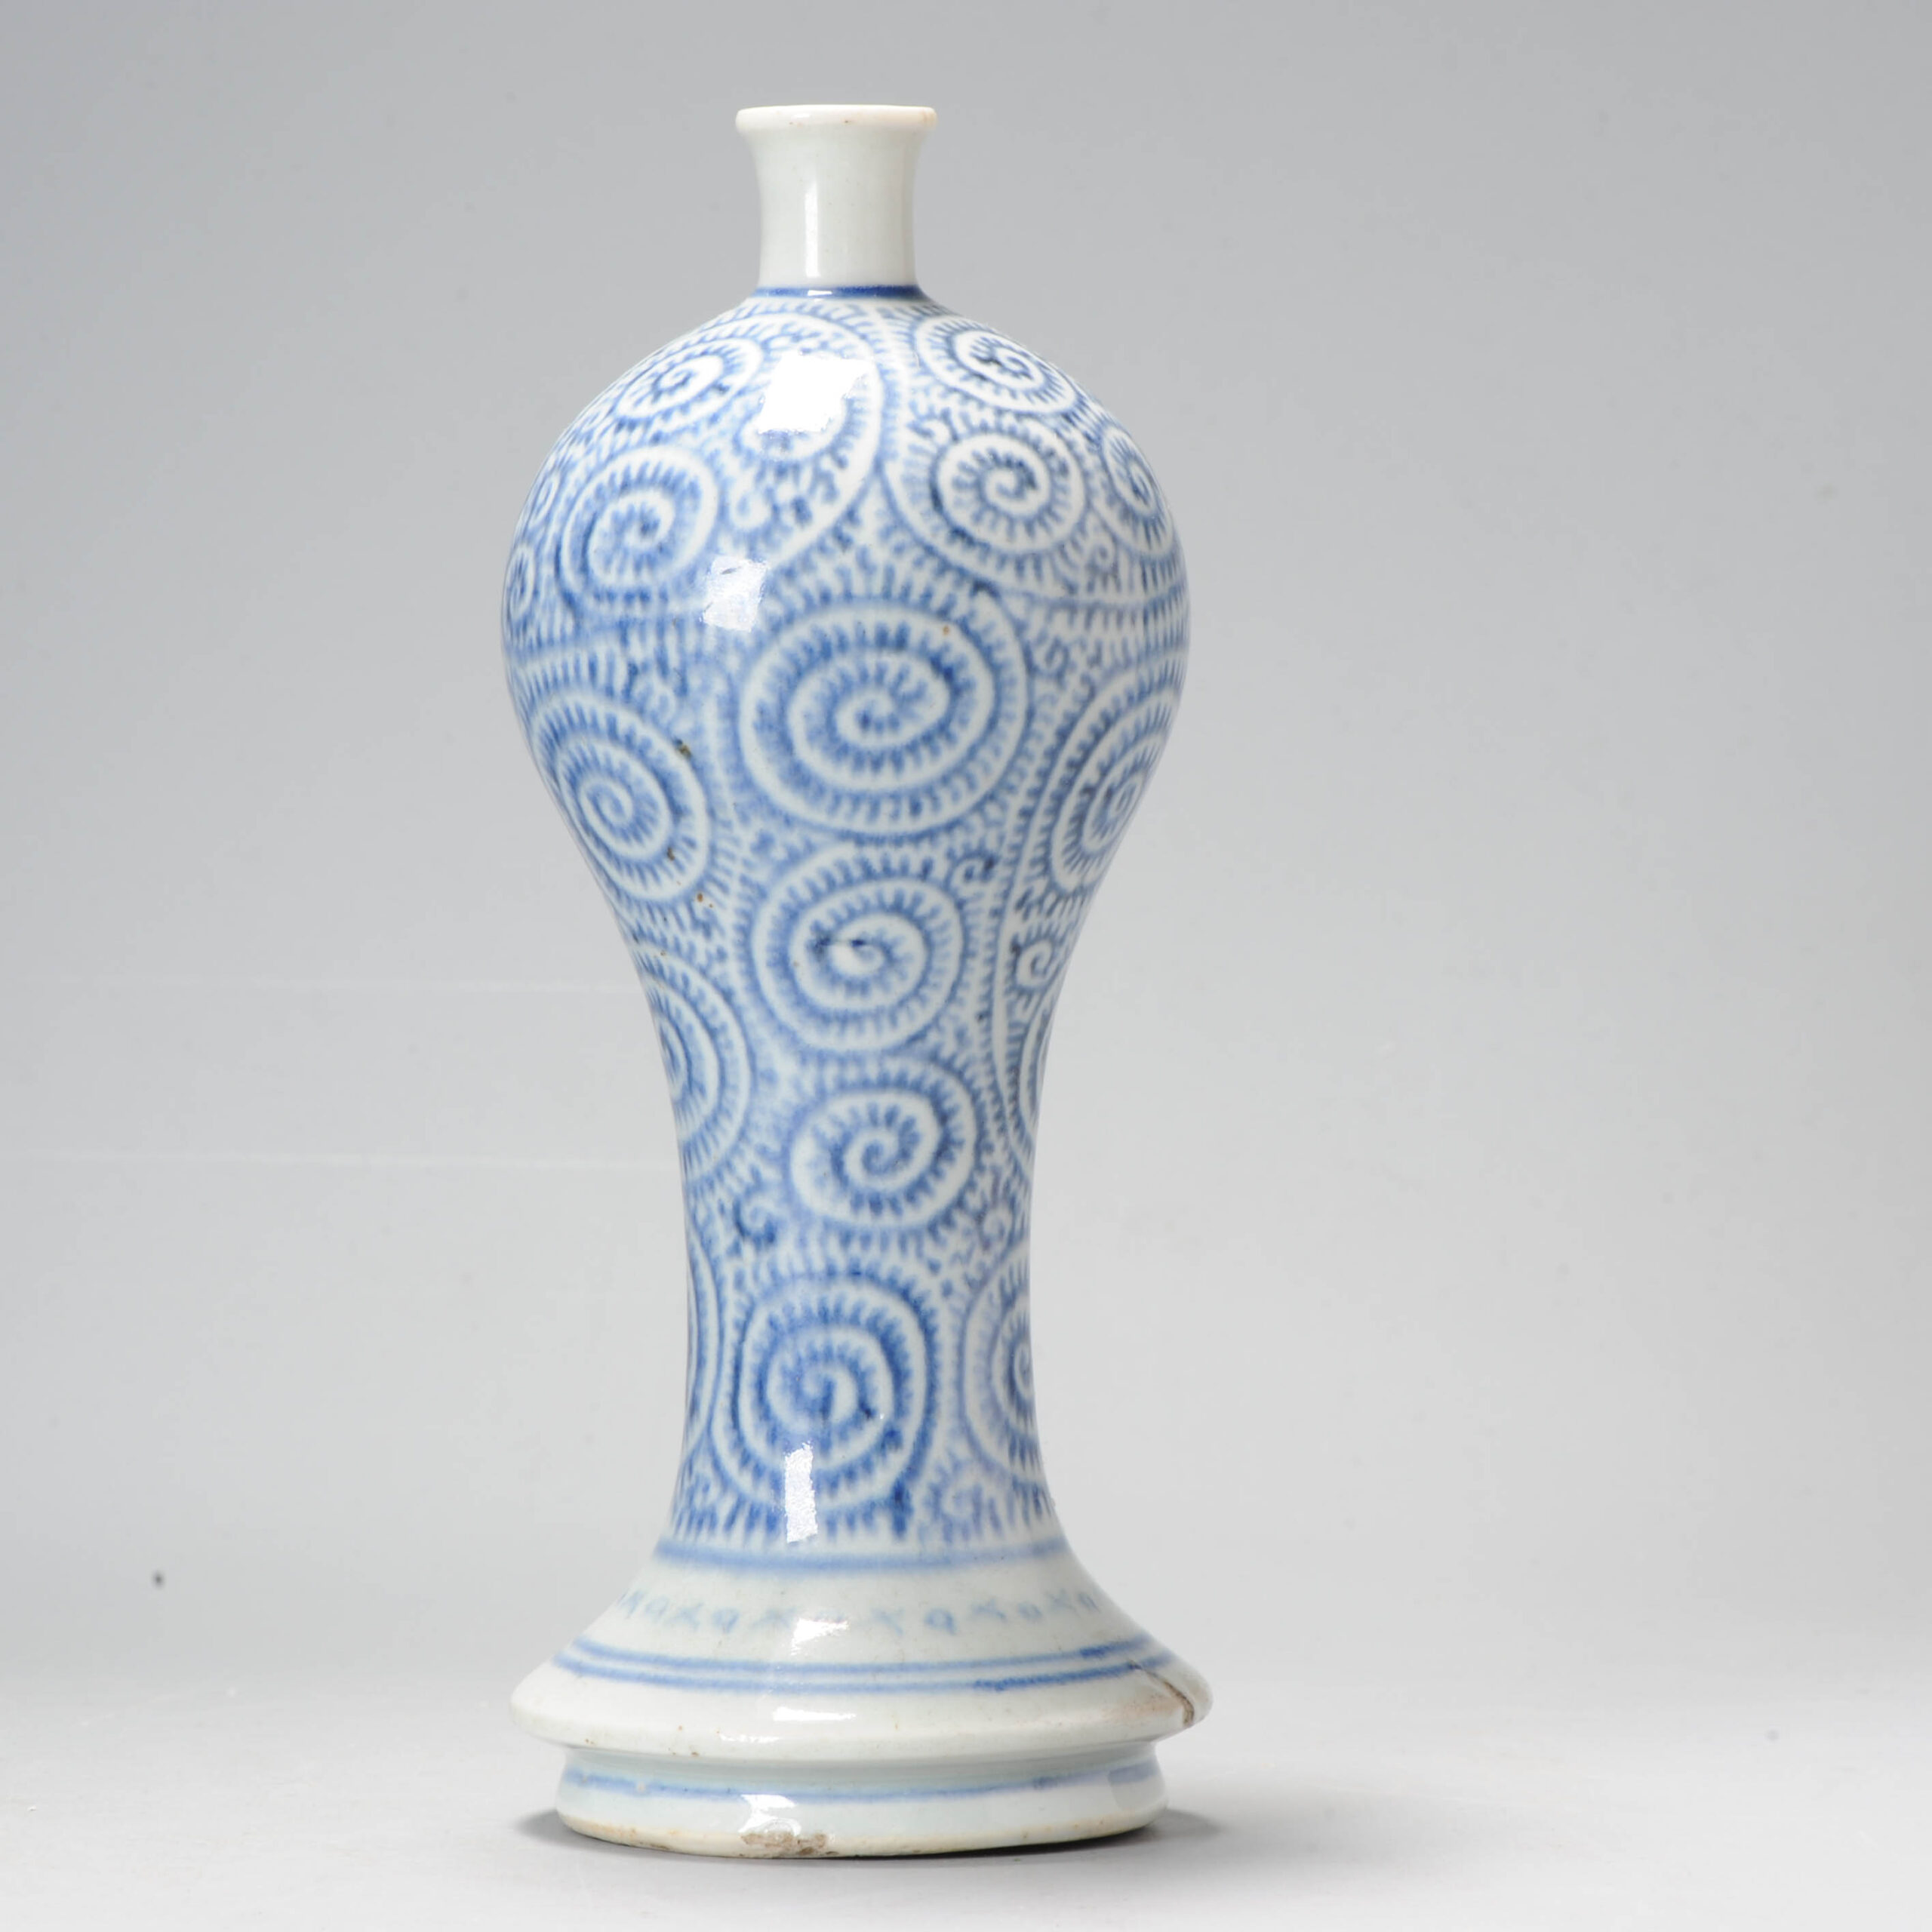 Unique Japanese Porcelain Antique Edo Period Vase in Japan 18th century Swirl decoration